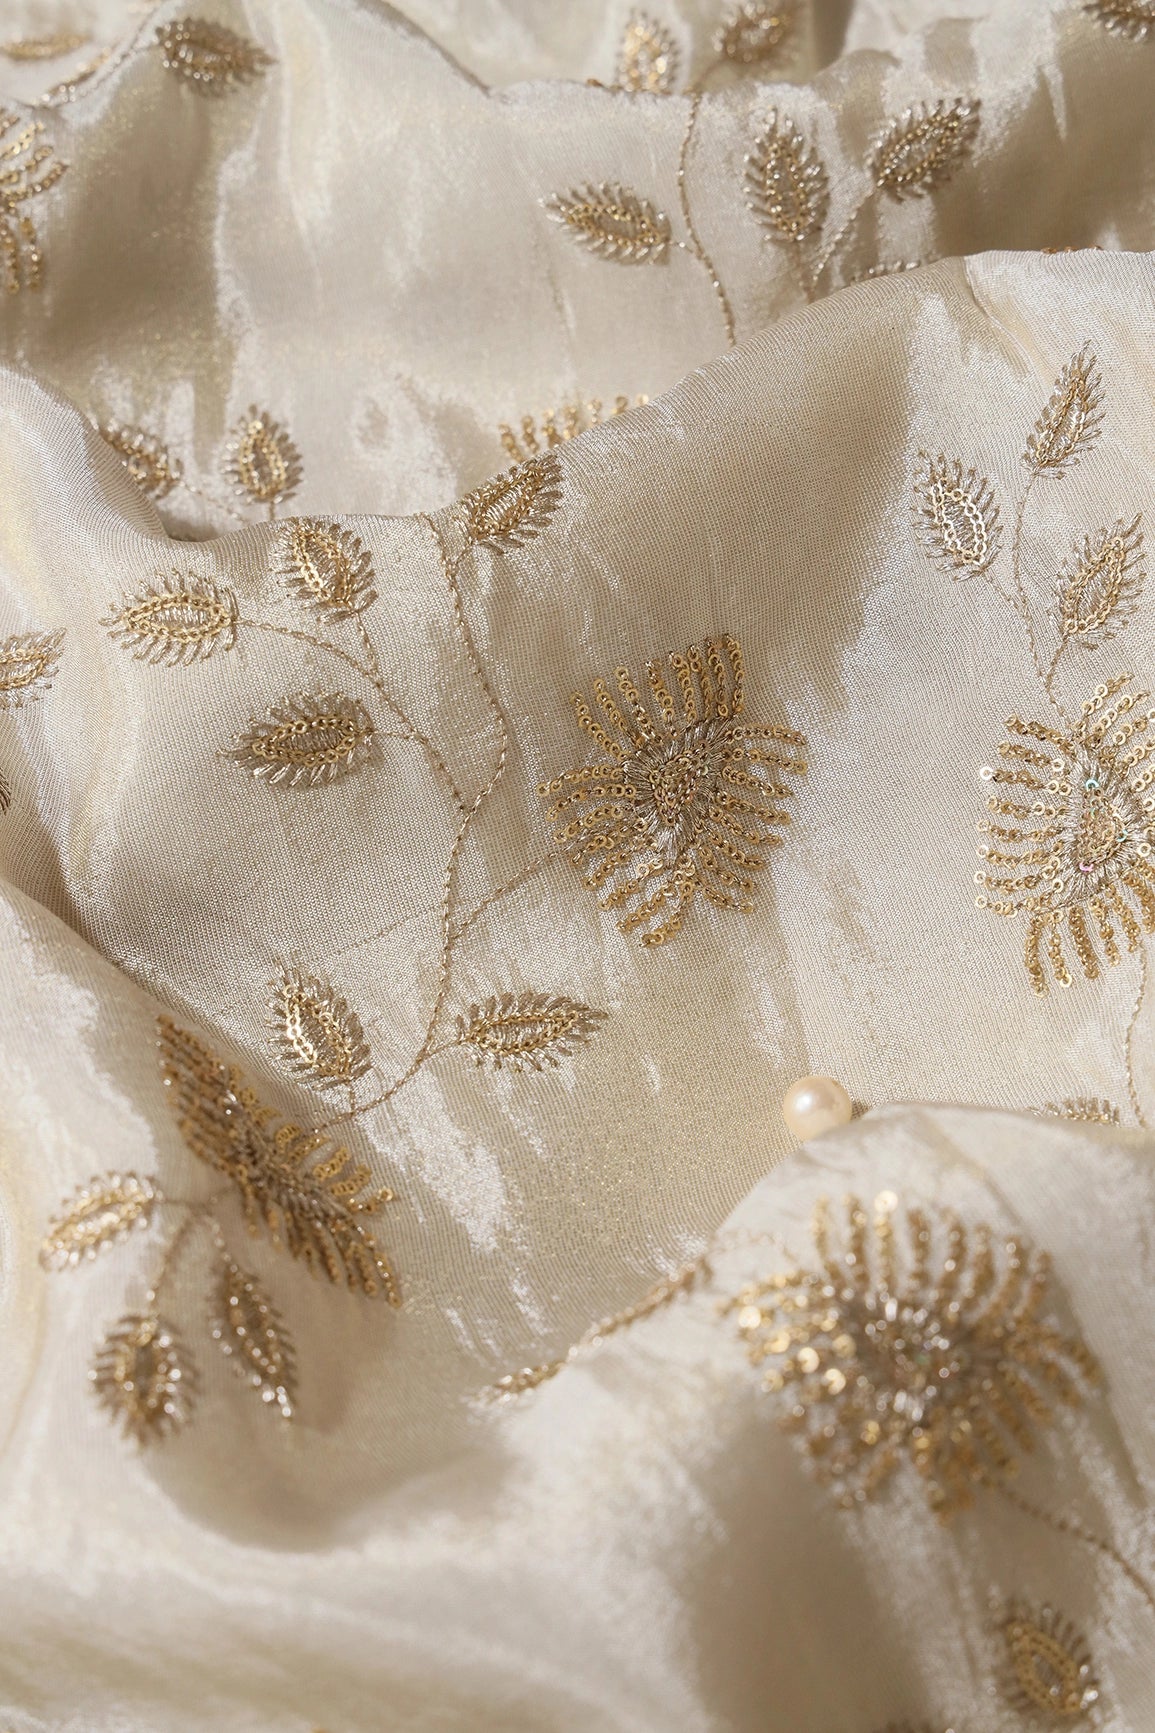 Gold Sequins And Zari Leafy Embroidery Work On Cream Pure Viscose Zari Tissue Fabric